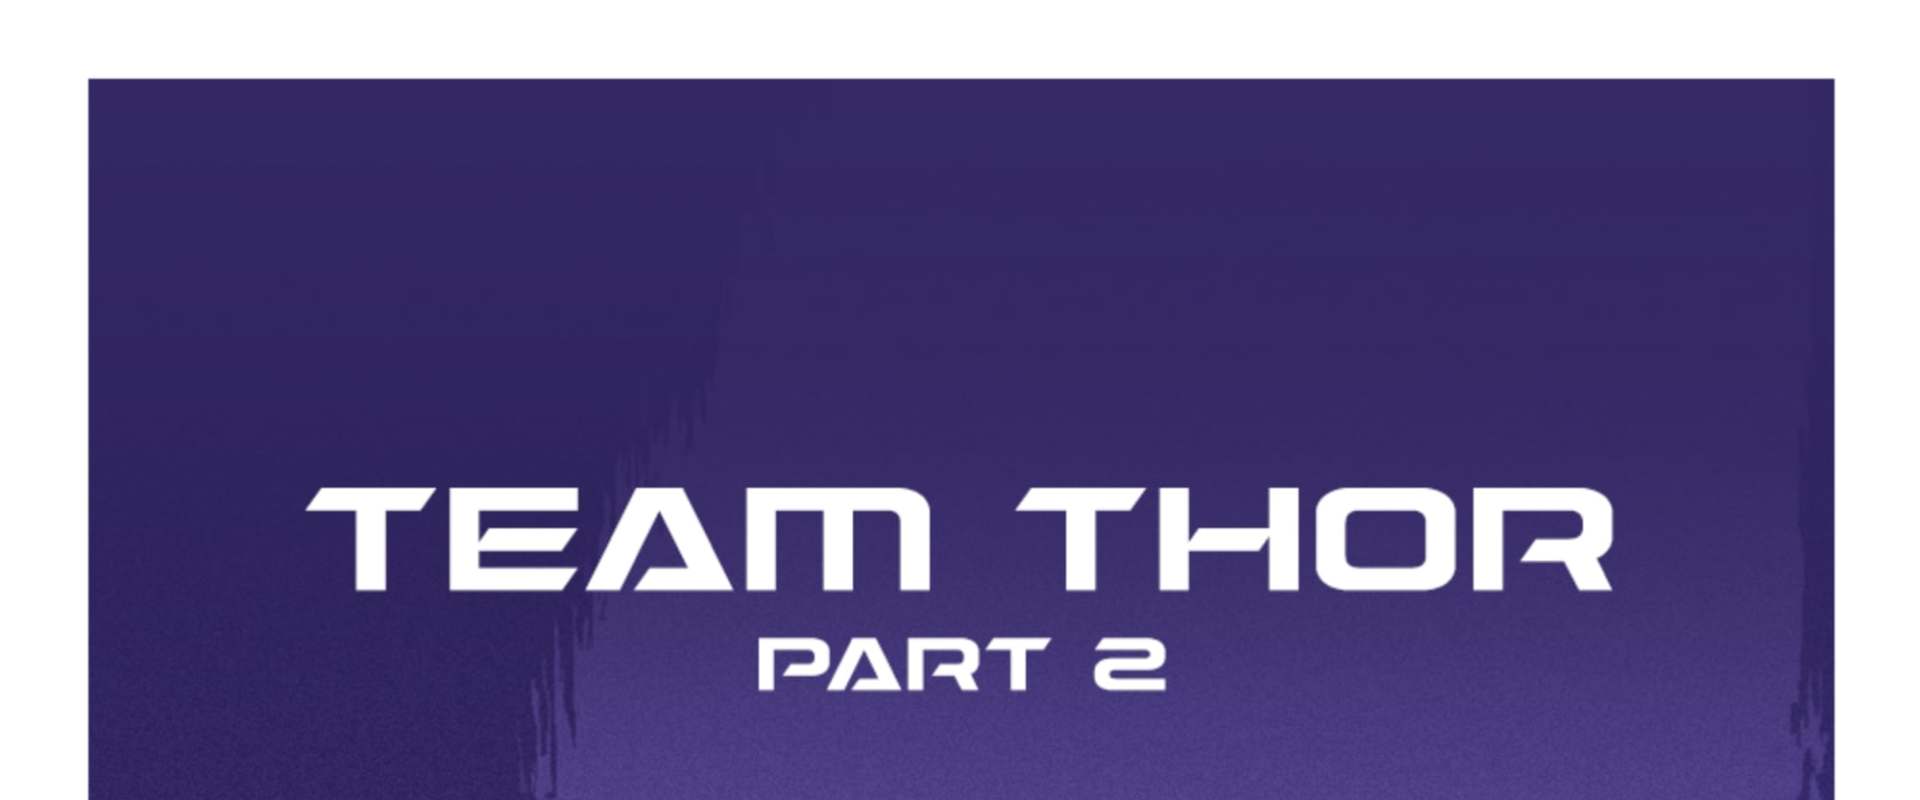 Team Thor: Part 2 background 2